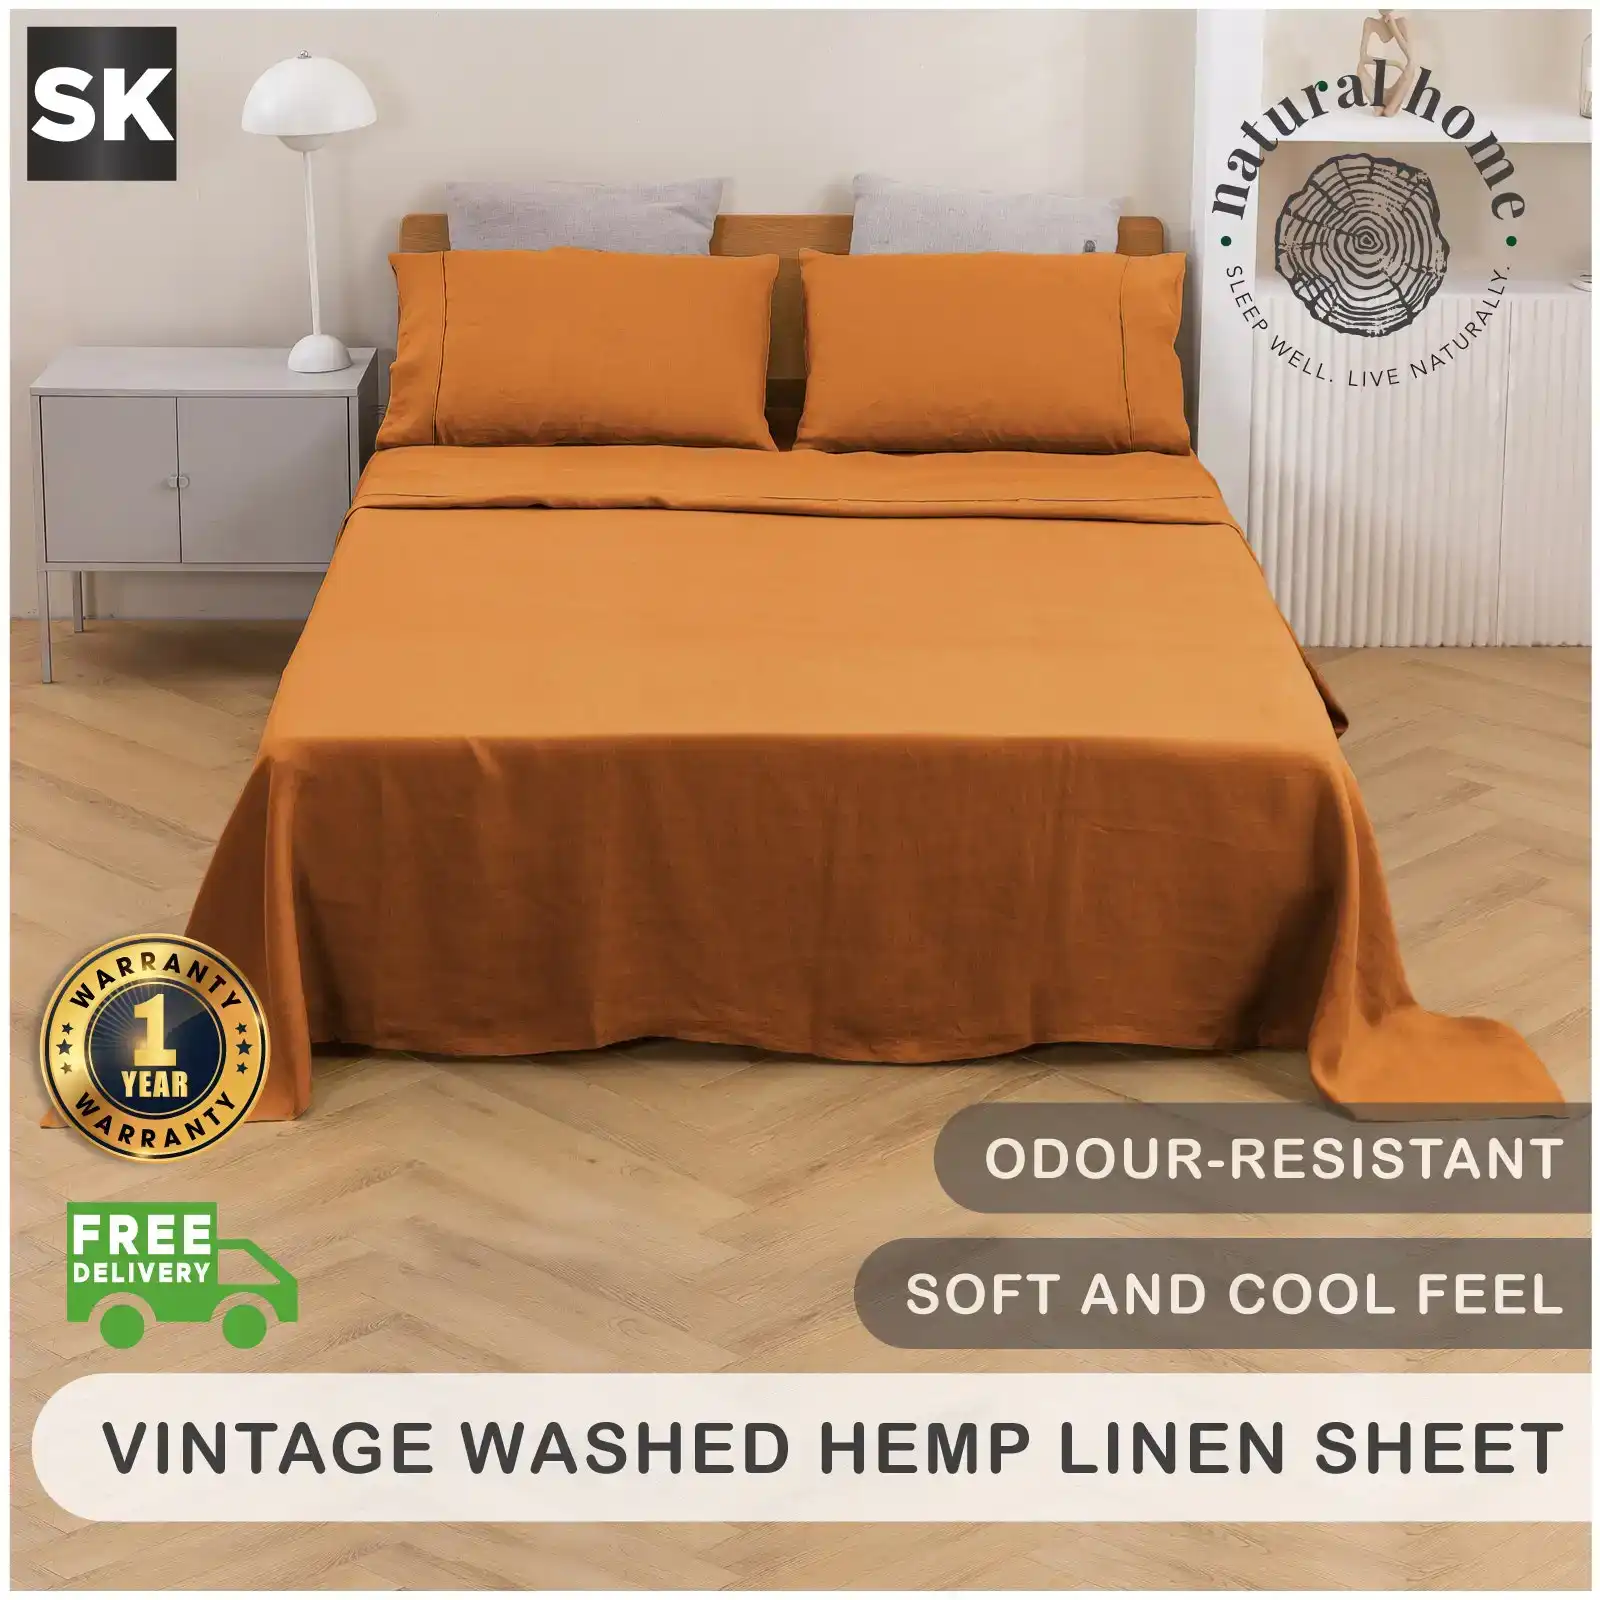 Natural Home Vintage Washed Hemp Linen Sheet Set Rust Super King Bed